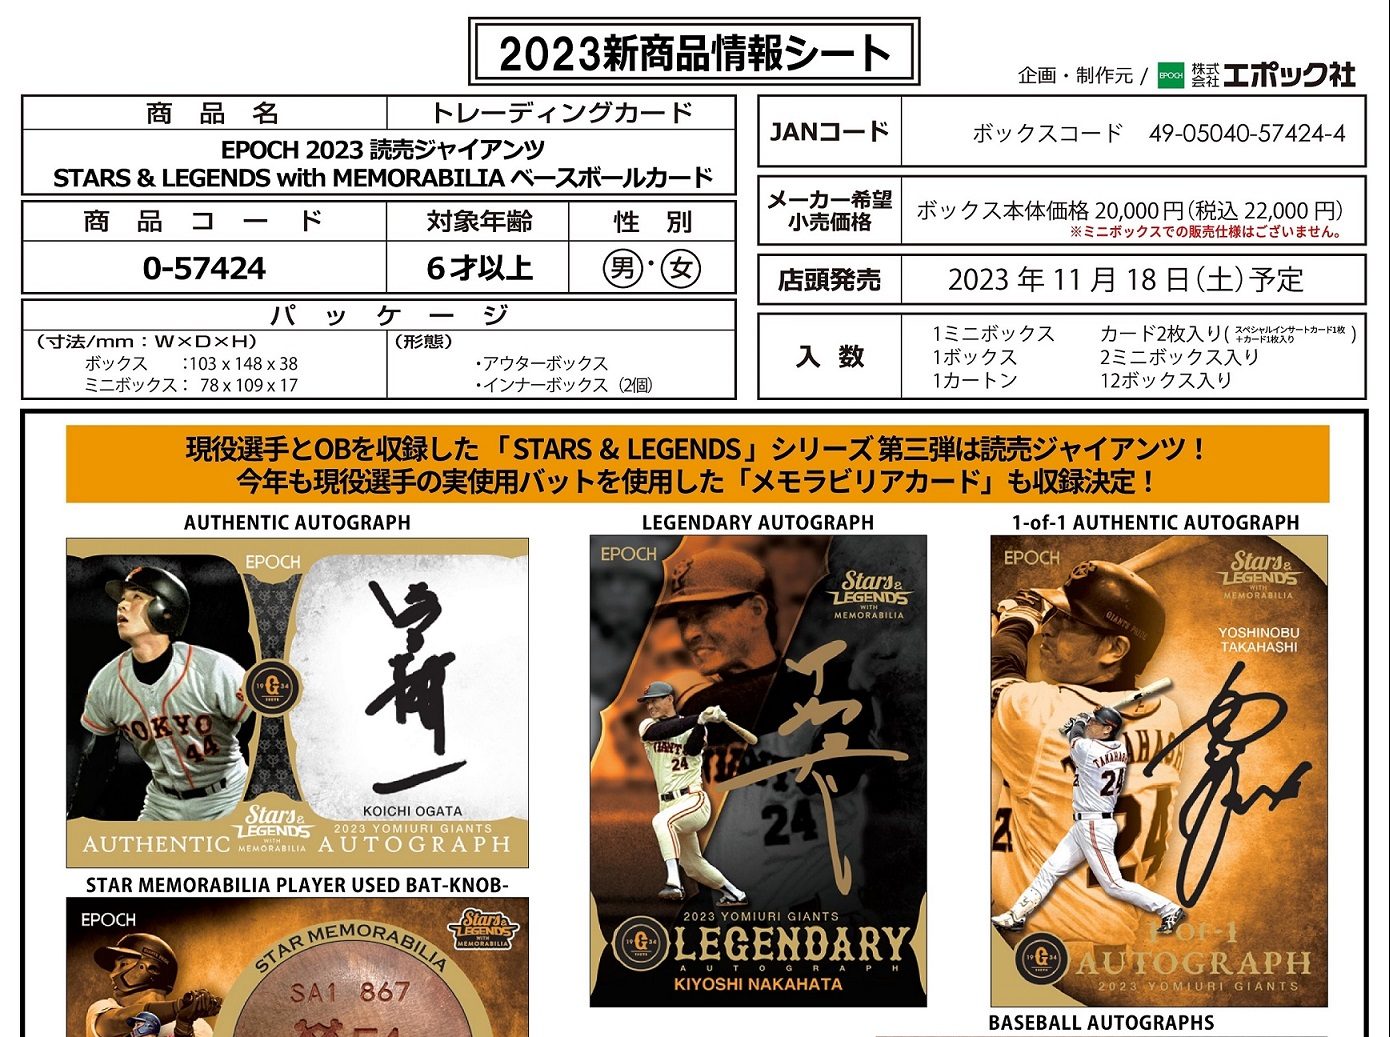 大人気 EPOCH 2023 and 読売ジャイアンツ MEMORABILIA 2022 BOX